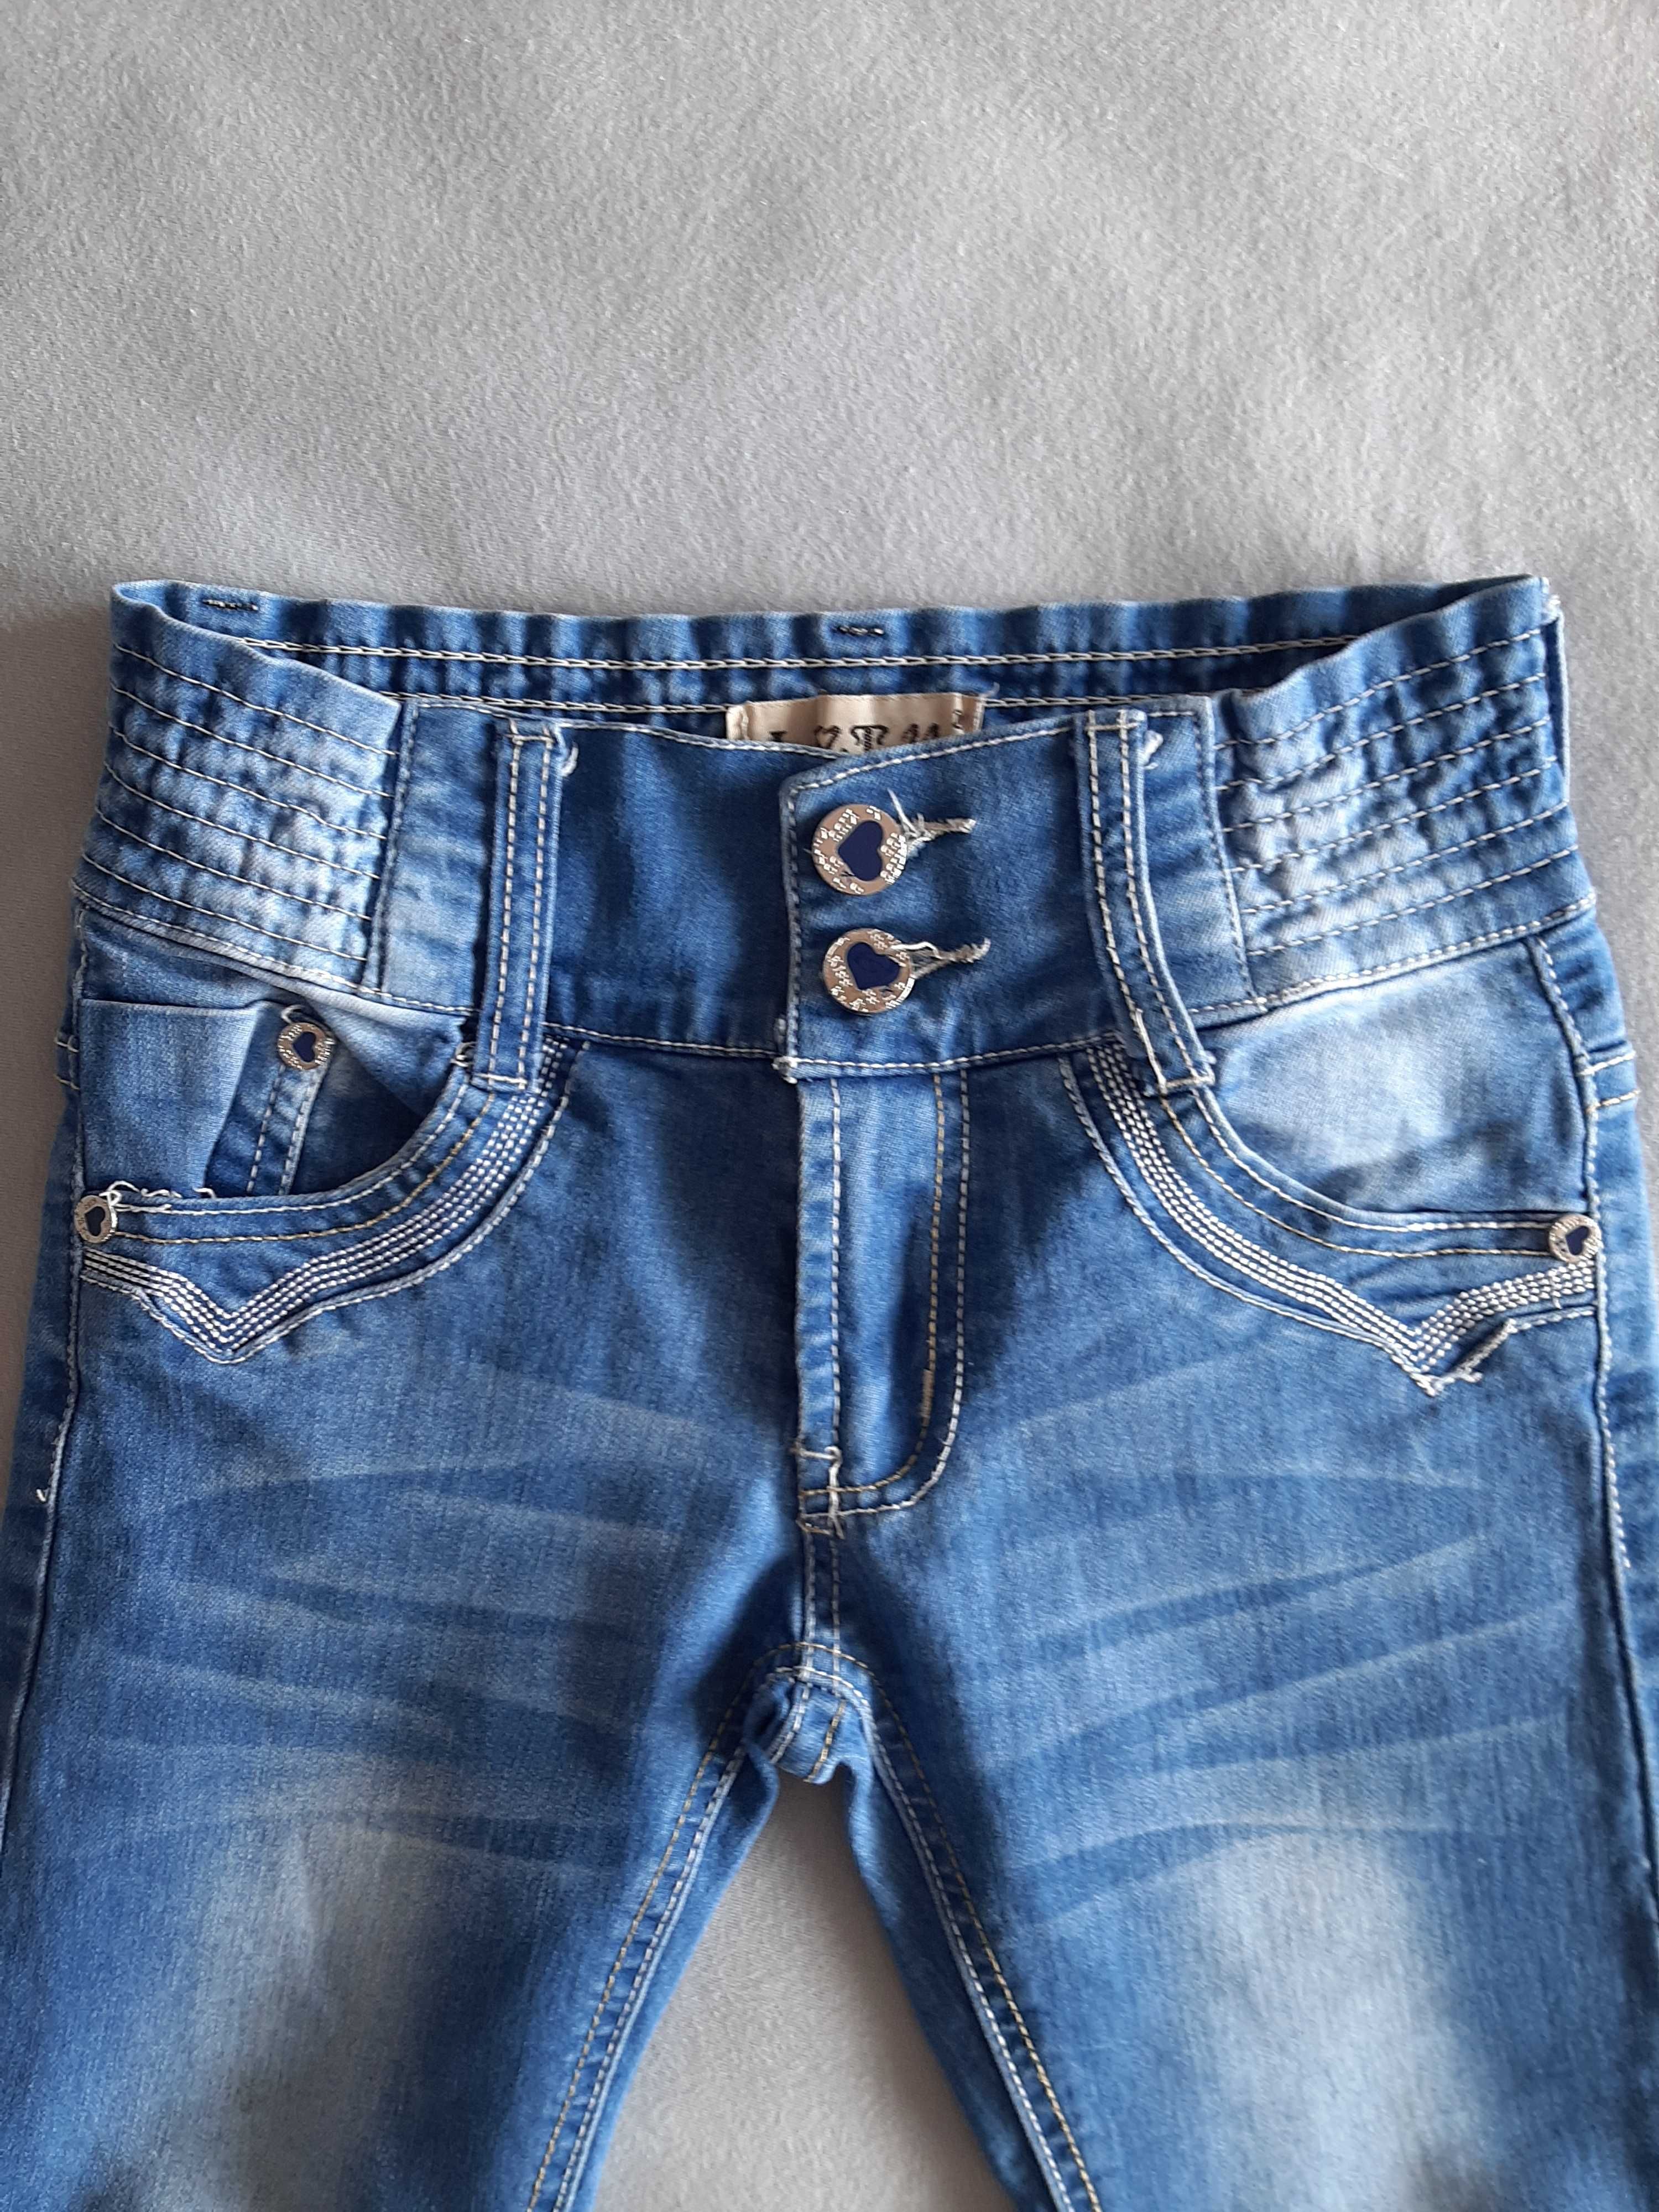 Bluza + spodnie jeans rozm.134/140 zestaw komplet stan vdb